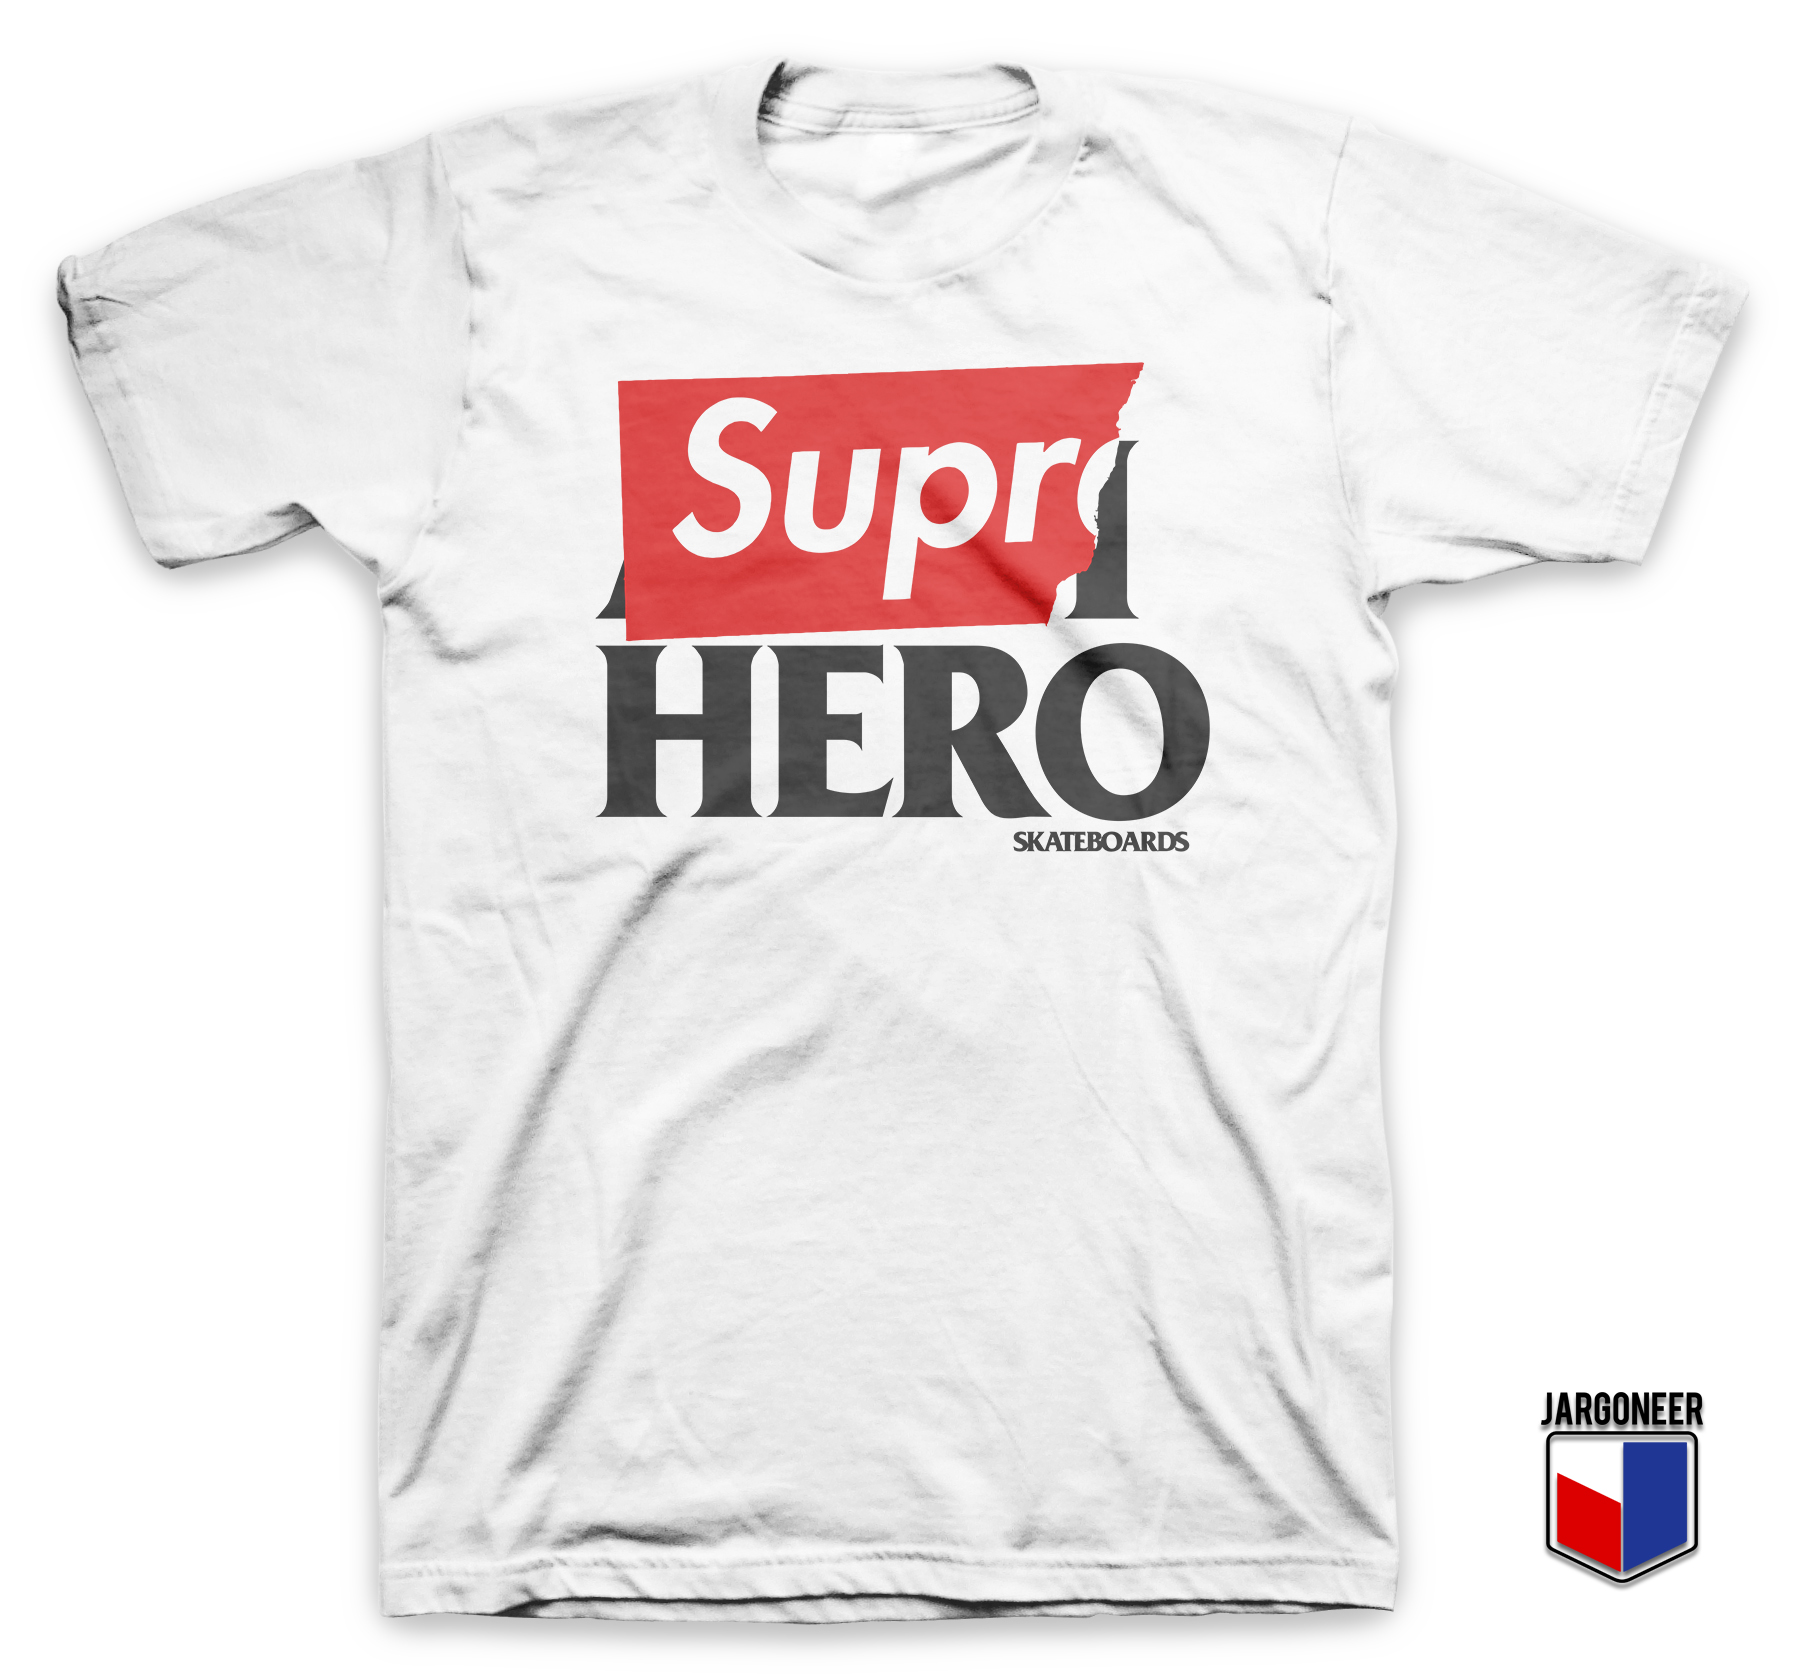 Real Supreme T-Shirts, Unique Designs